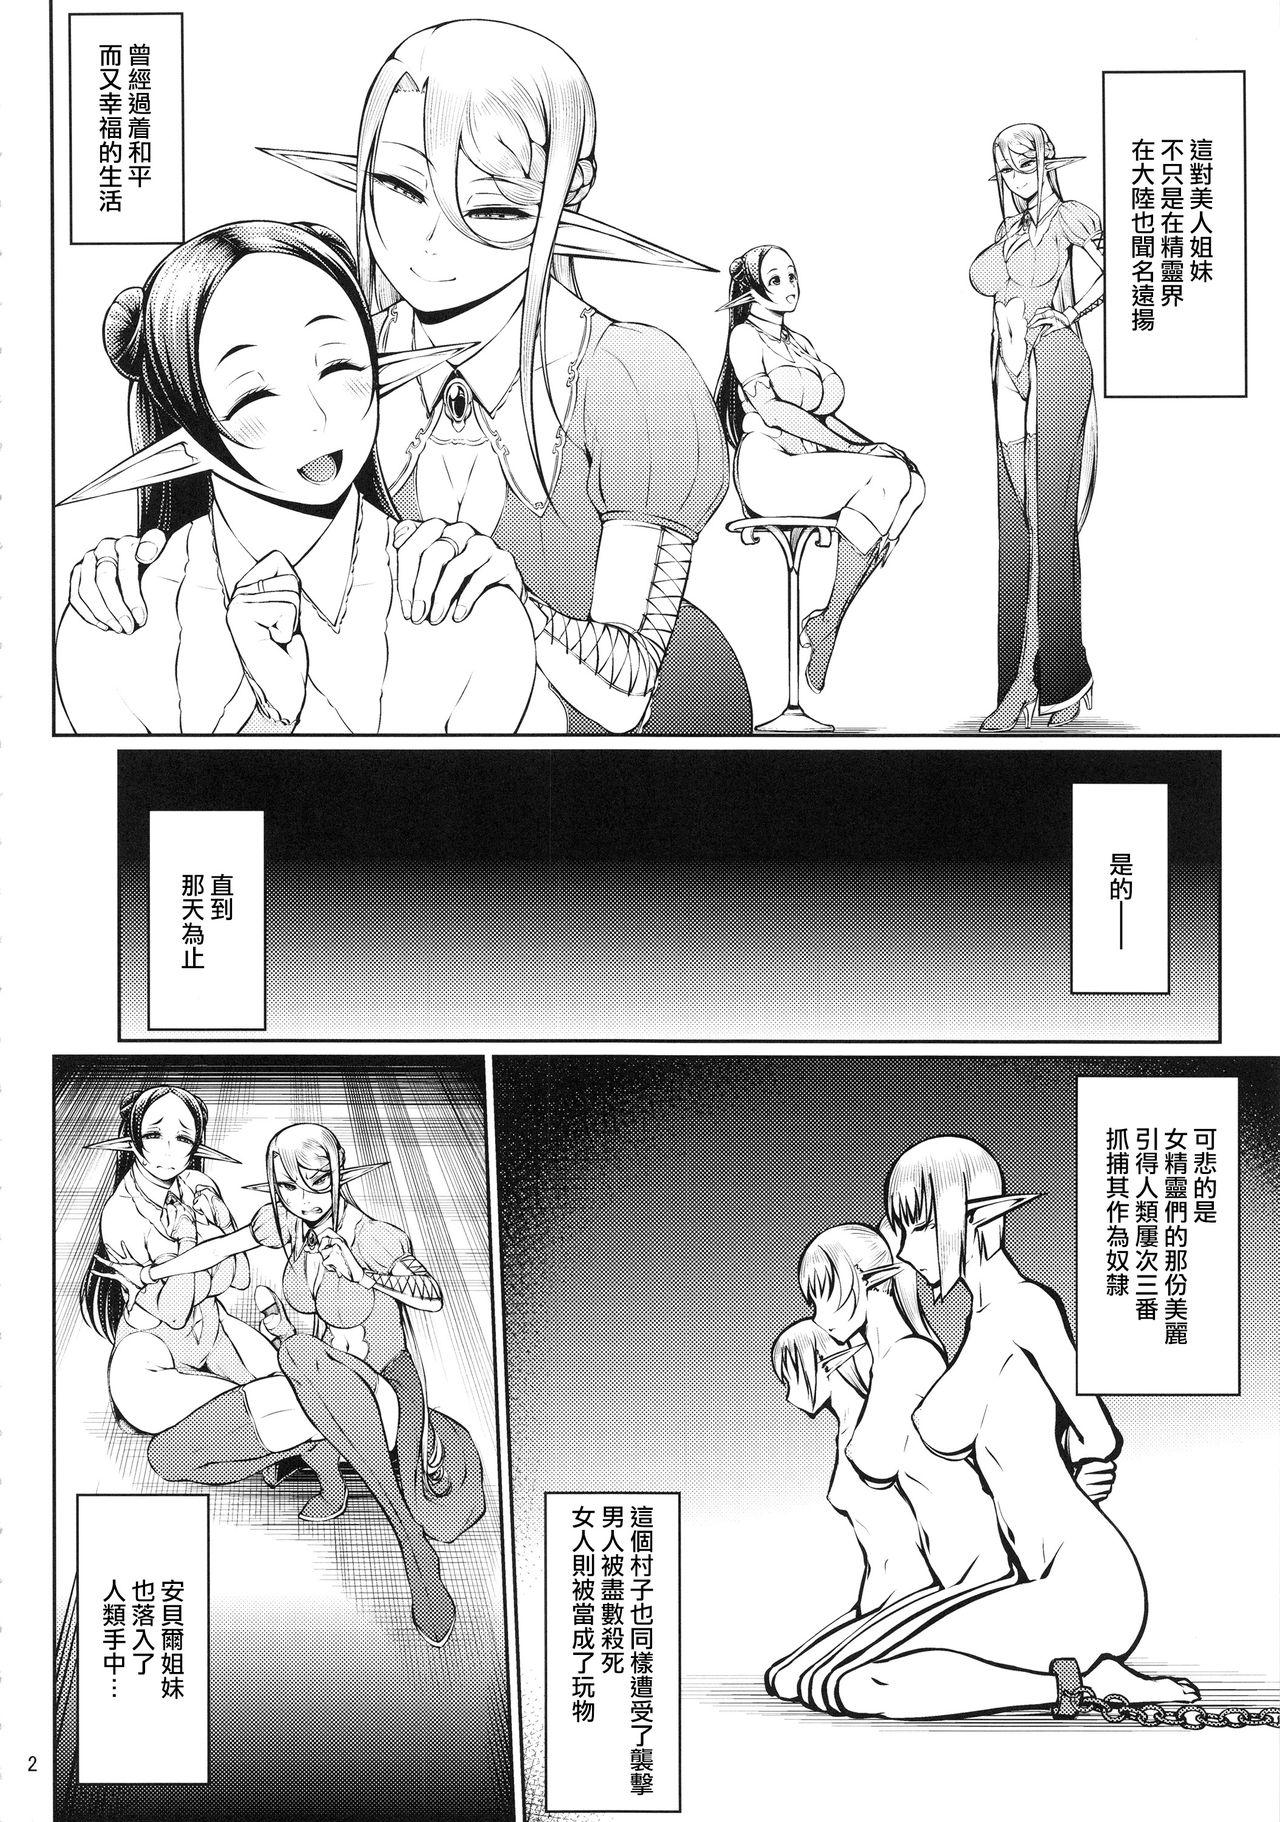 Girlfriend Kago no Naka no Tori Daiisshuu - Original Neighbor - Page 3